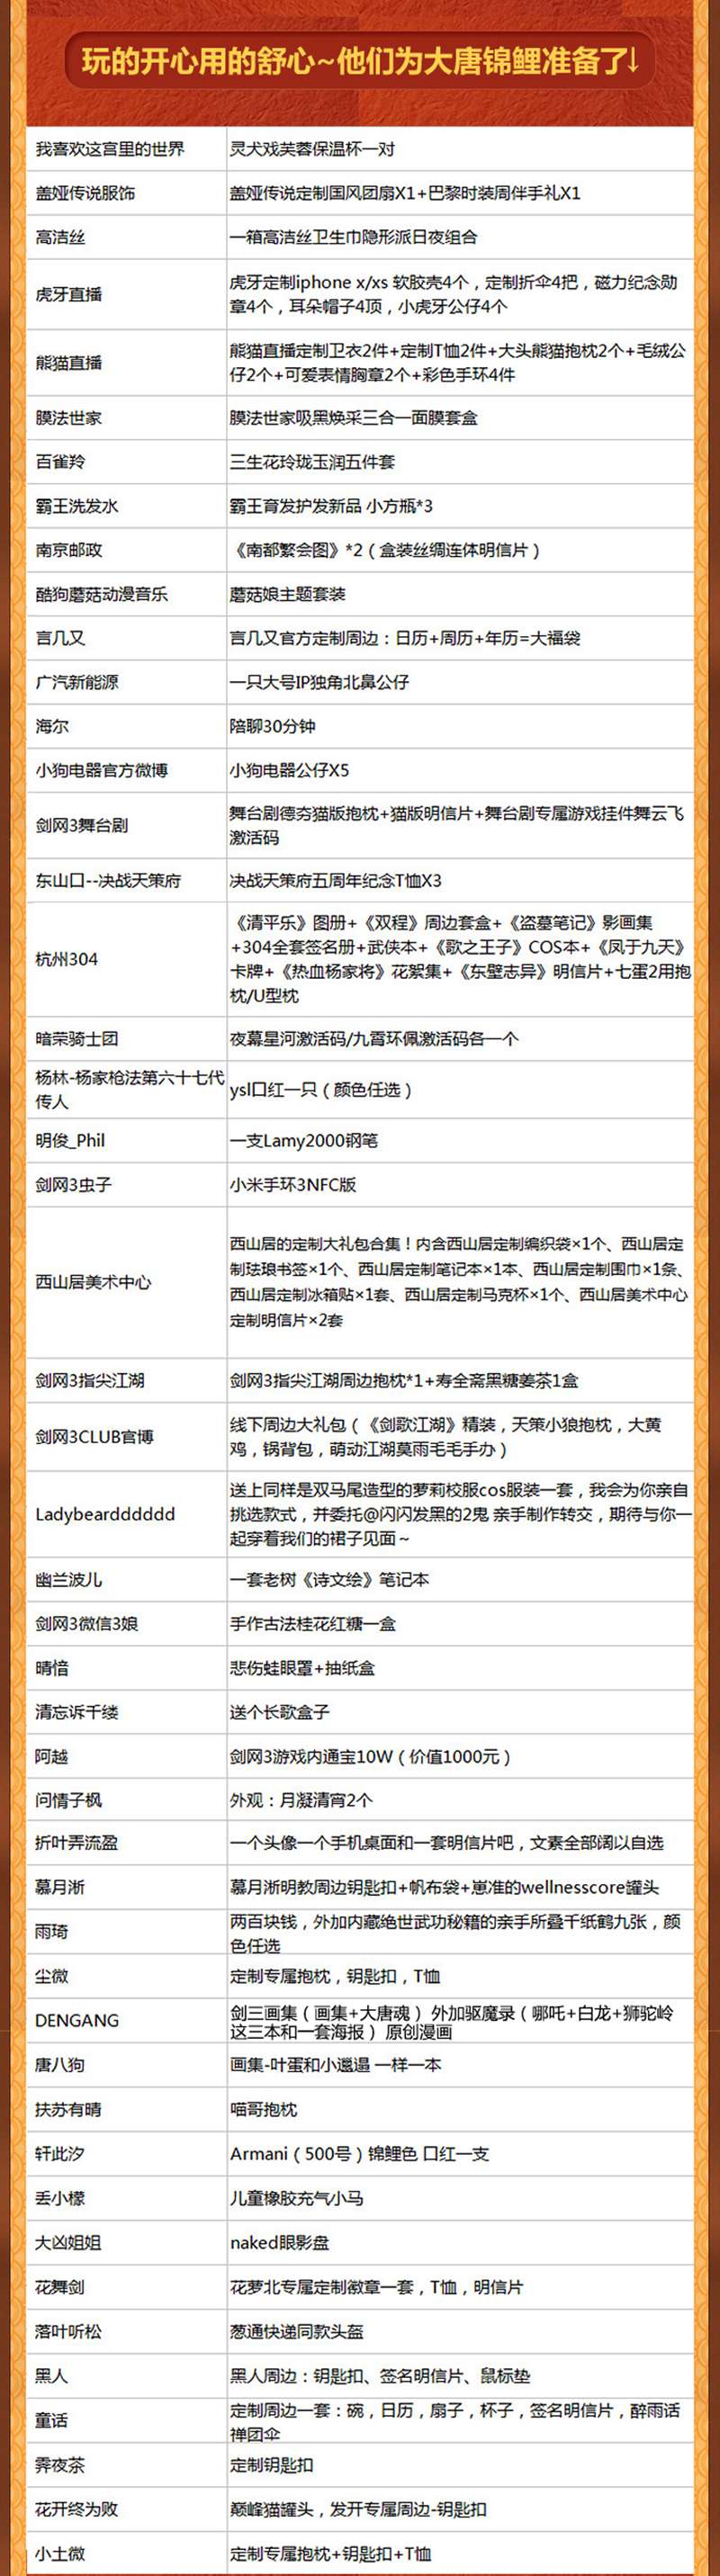 《剑网3》重阳庆典全新挂件亮相 “大唐锦鲤”逆天礼品单发布